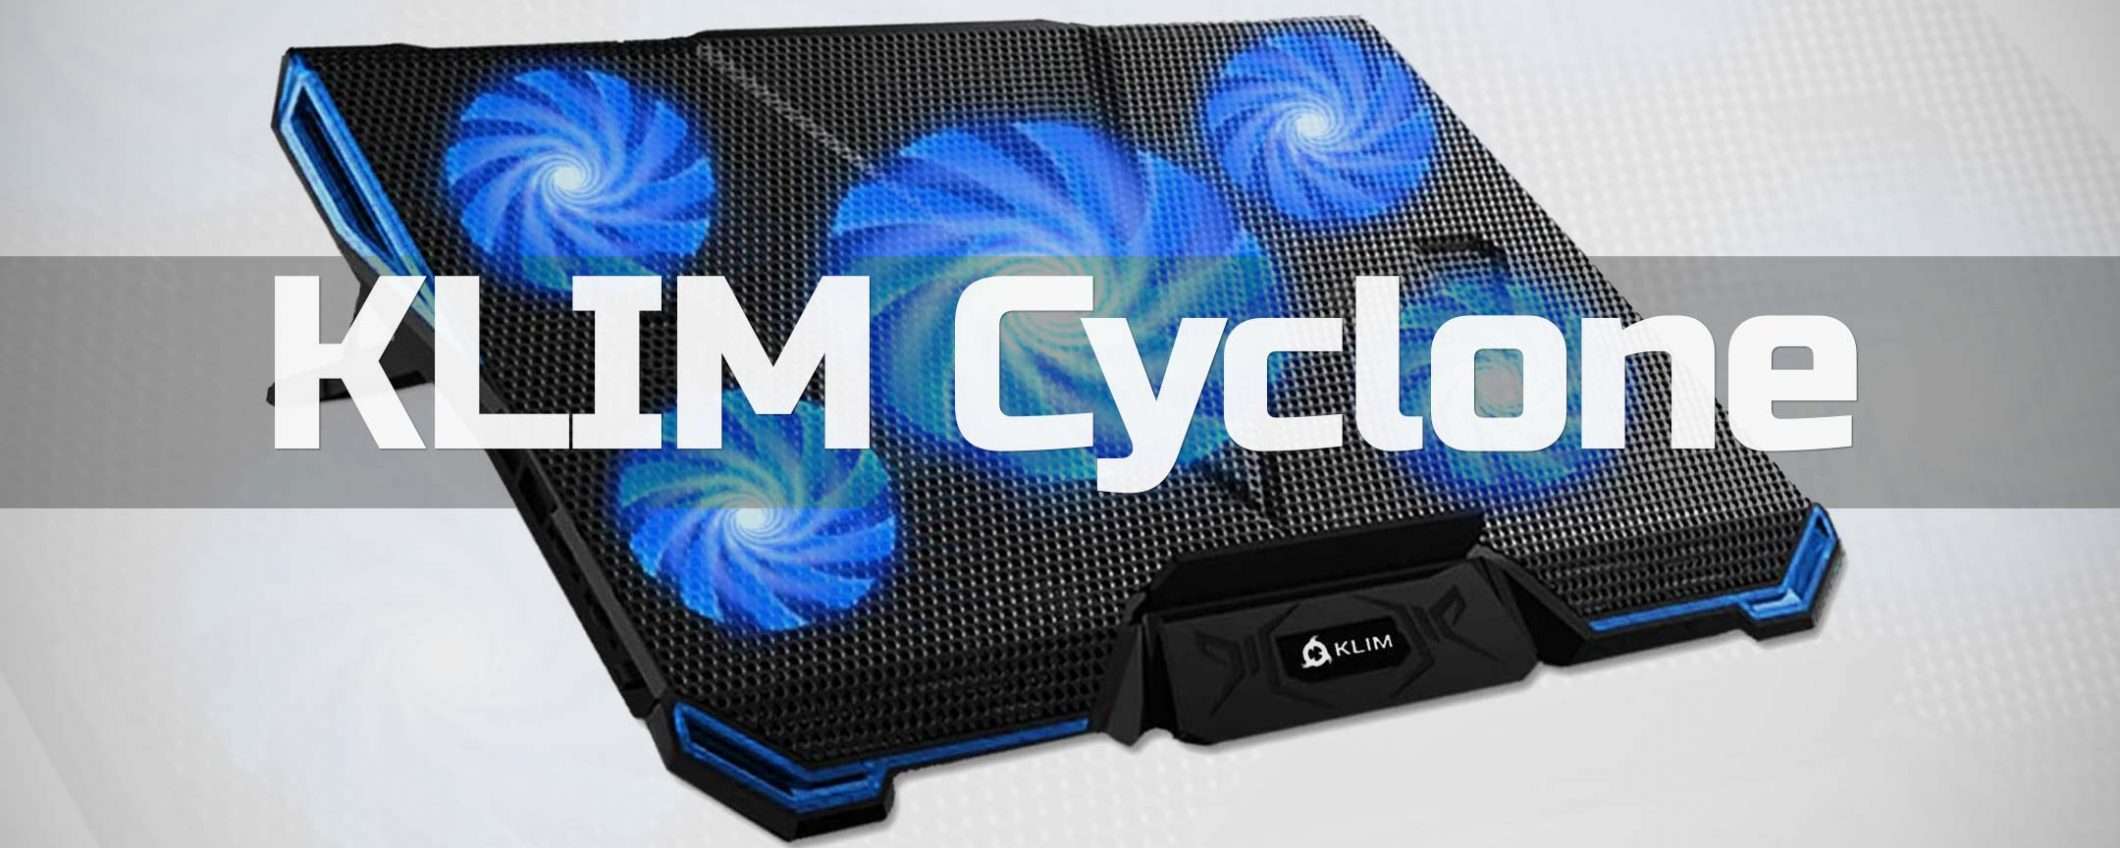 KLIM Cyclone: così il laptop non scotta (offerta)